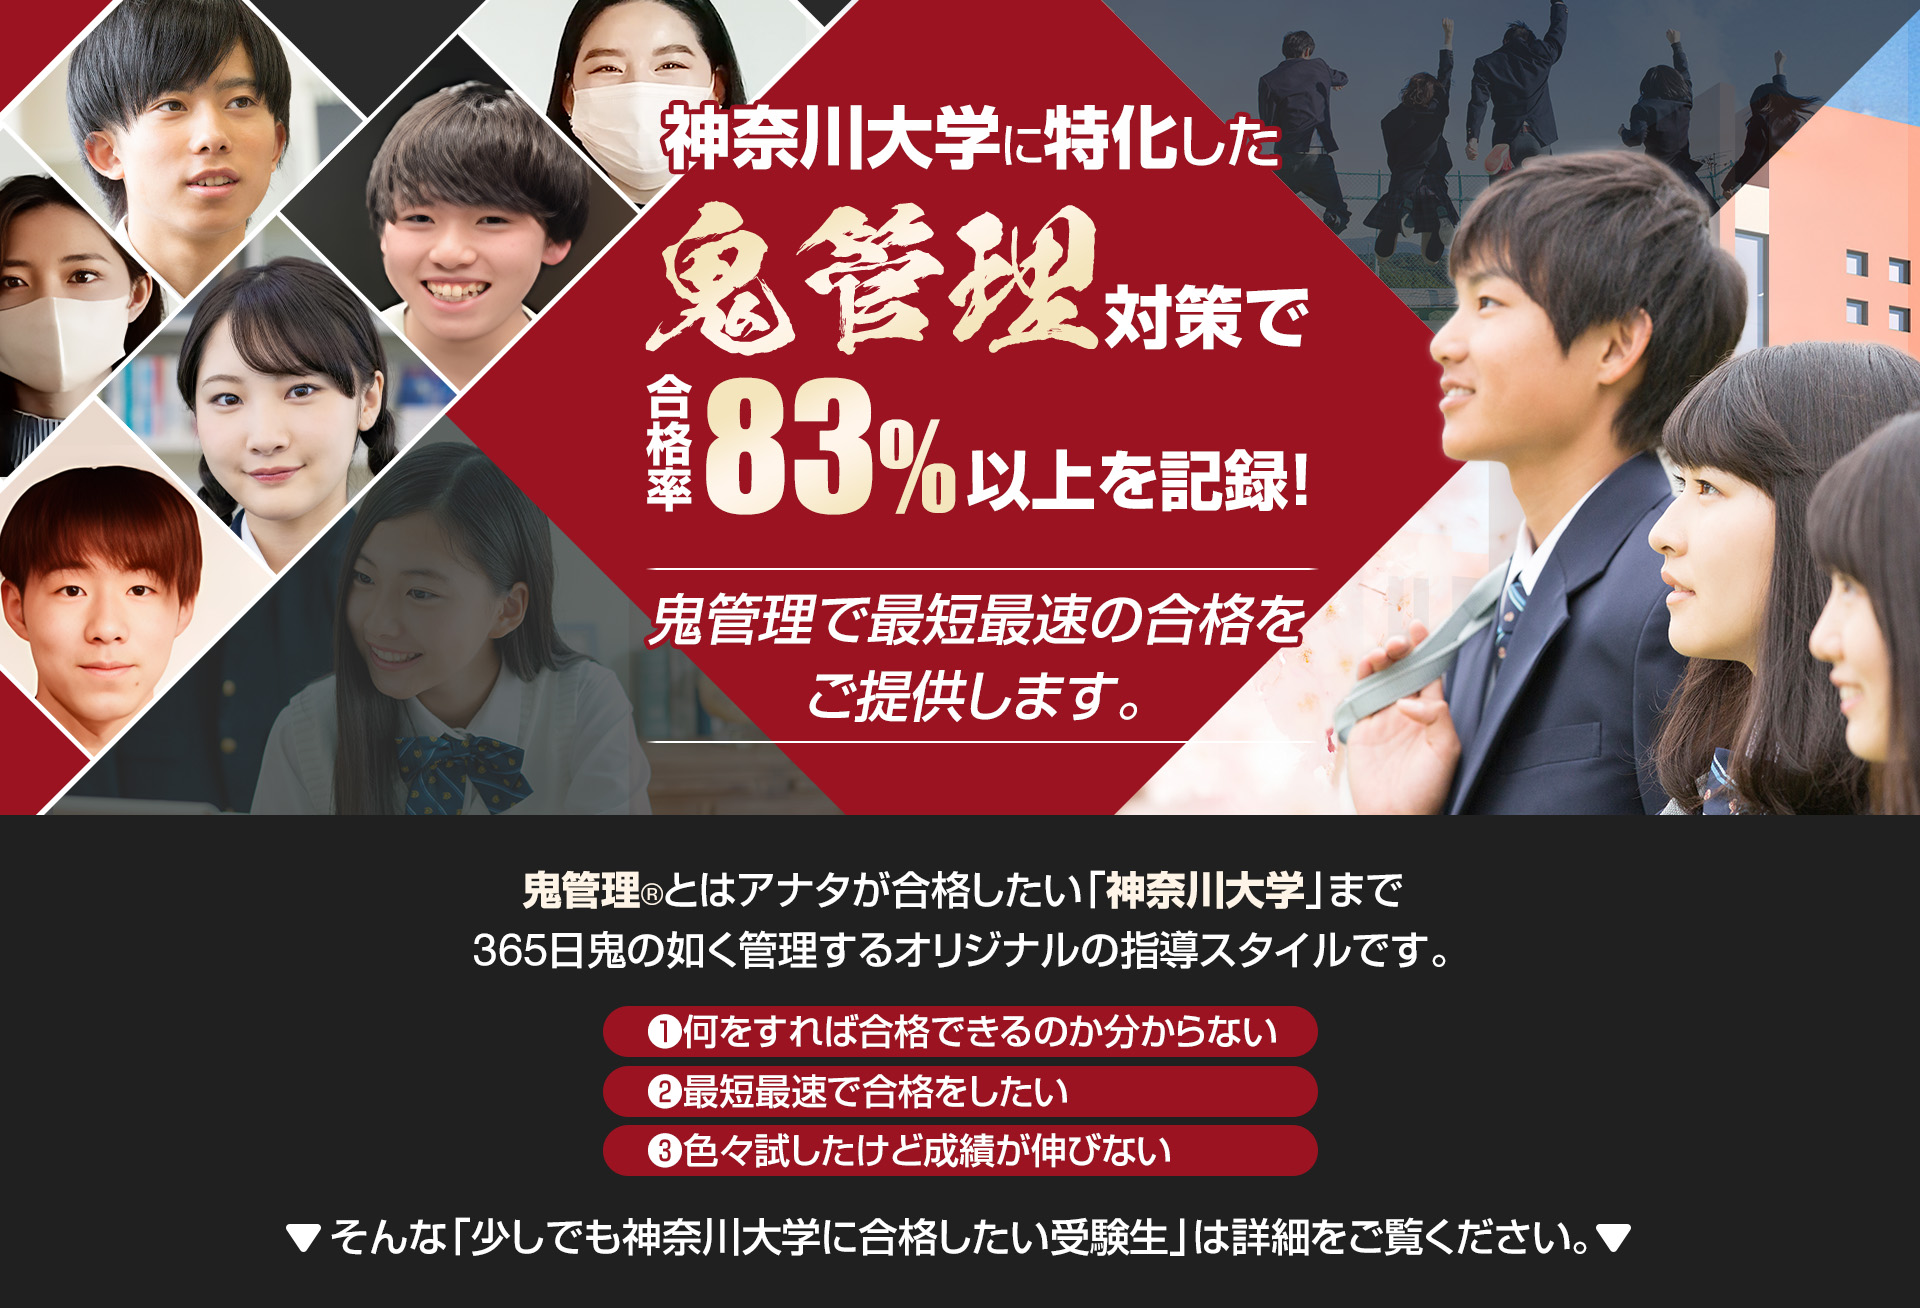 神奈川大学に特化した鬼管理対策で合格率83％以上を記録。鬼管理でアナタが合格したい神奈川大学への最短最速の合格を提供します。